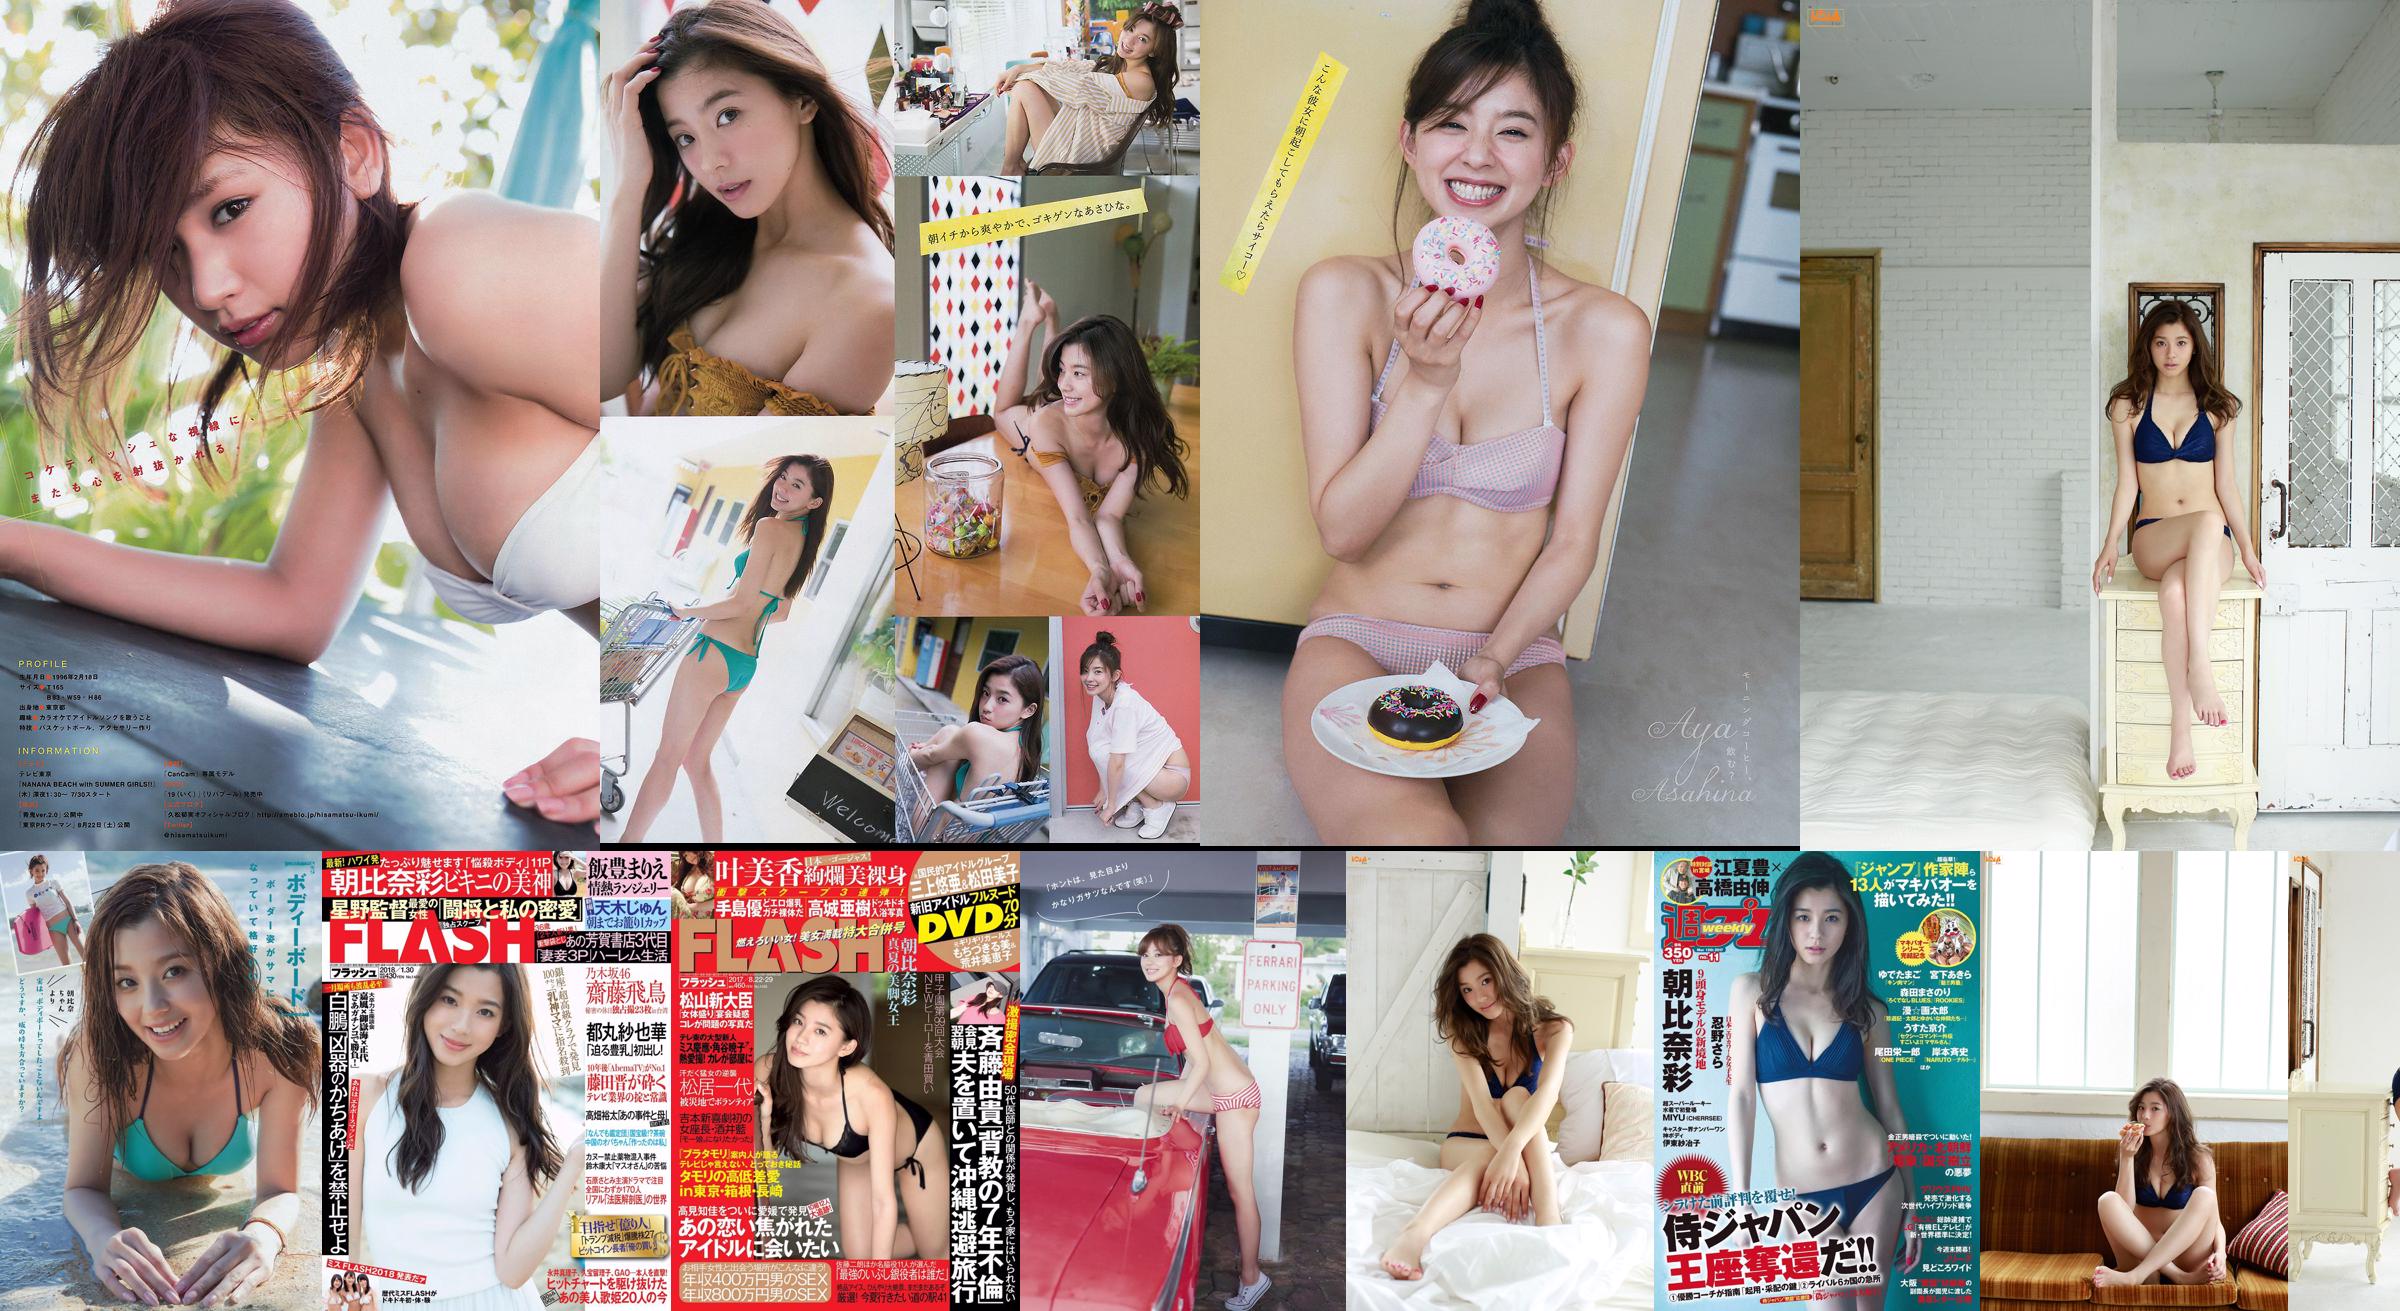 Asahina Nasa Nemoto Nagi Kumae Ryuyuki Hoshina Mitsuki Hatsukagawa Minami [Playboy semanal] 2016 Revista fotográfica n. ° 22 No.e3175e Página 1